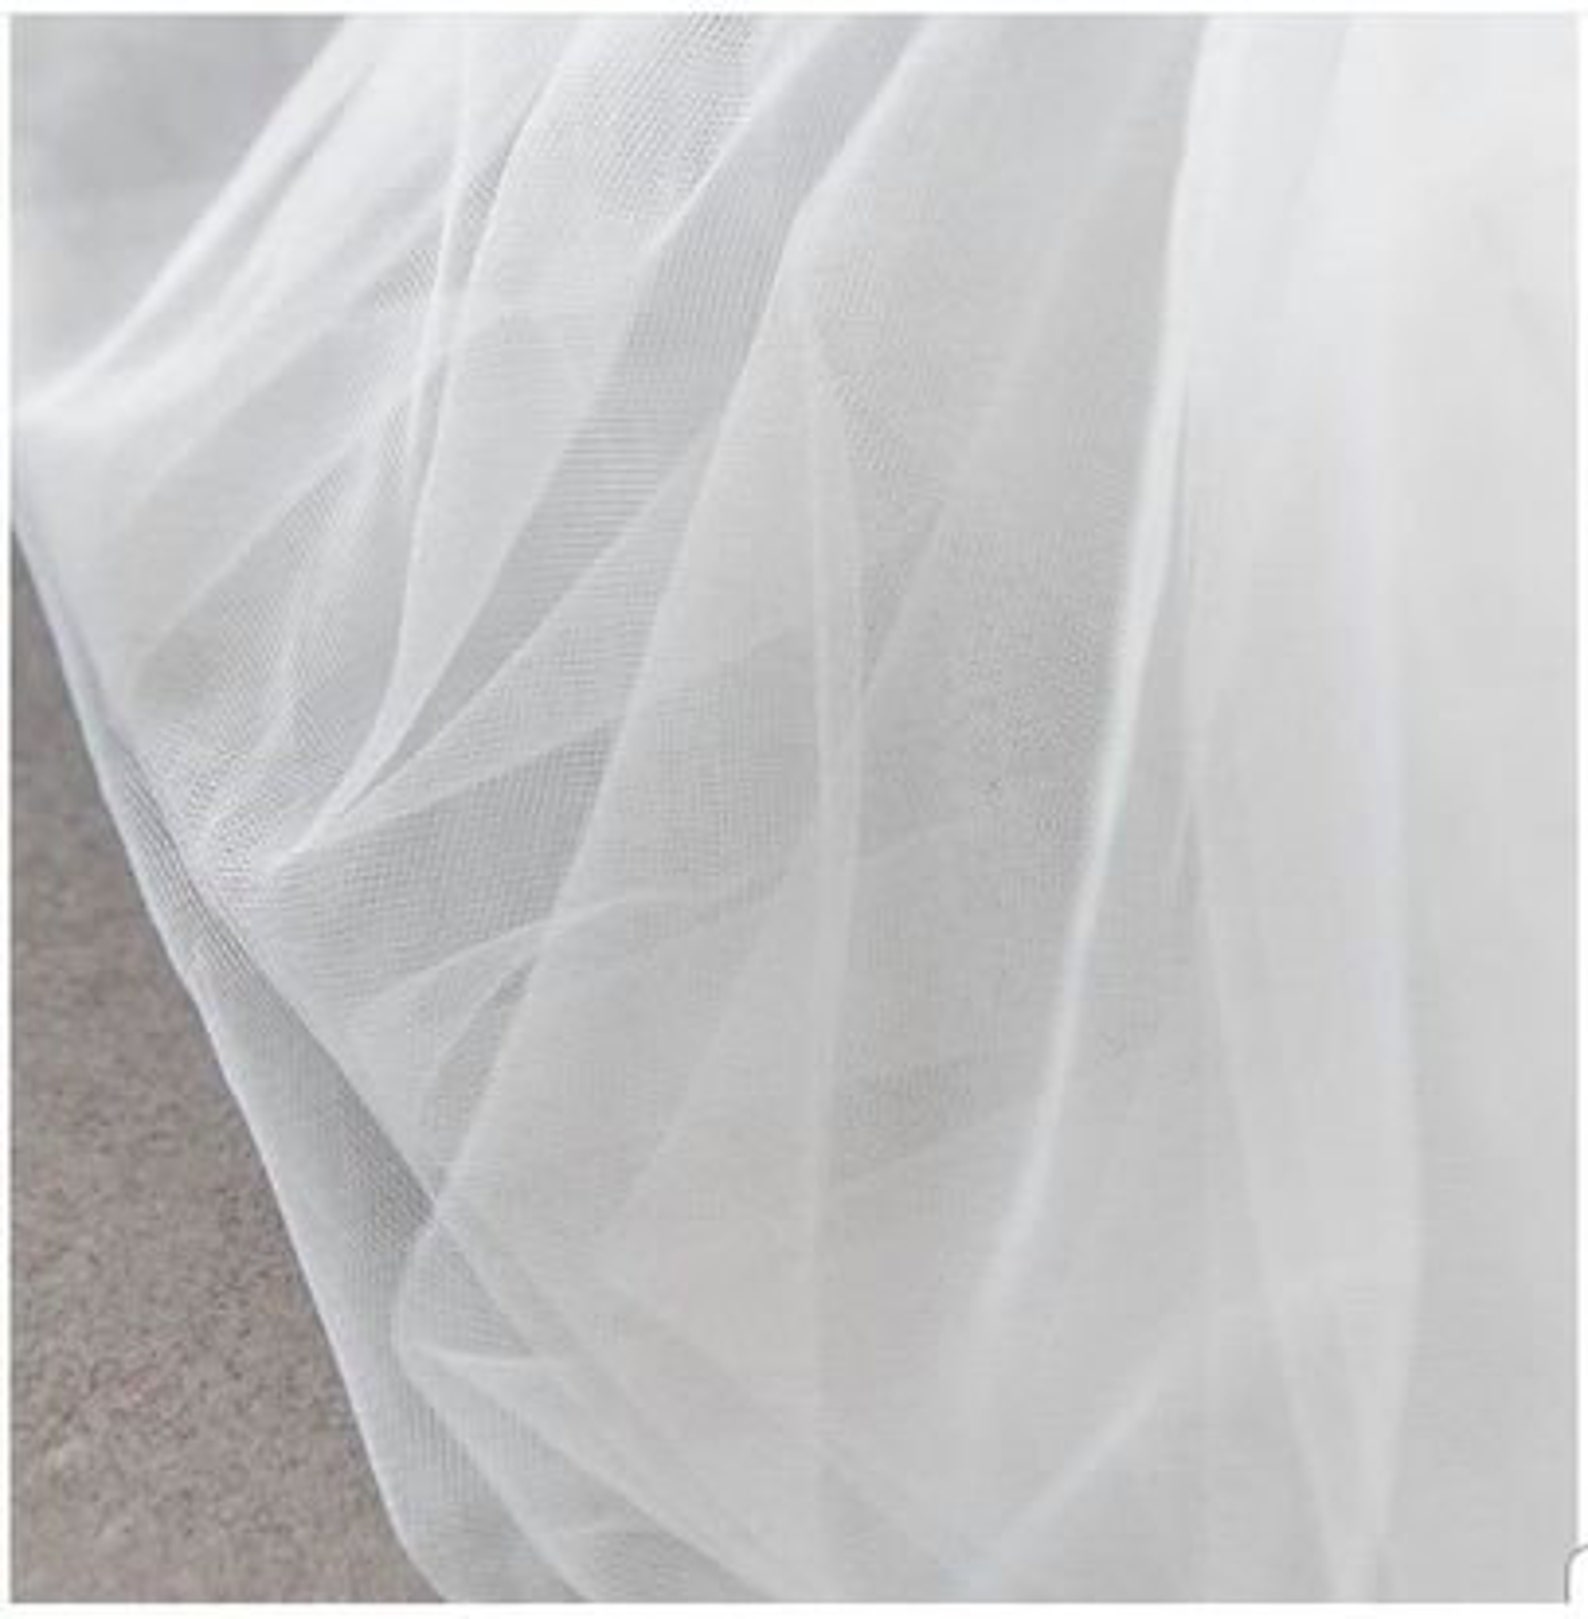 Floral Lace Wedding Dress off Shoulder Corset Wedding Dress - Etsy